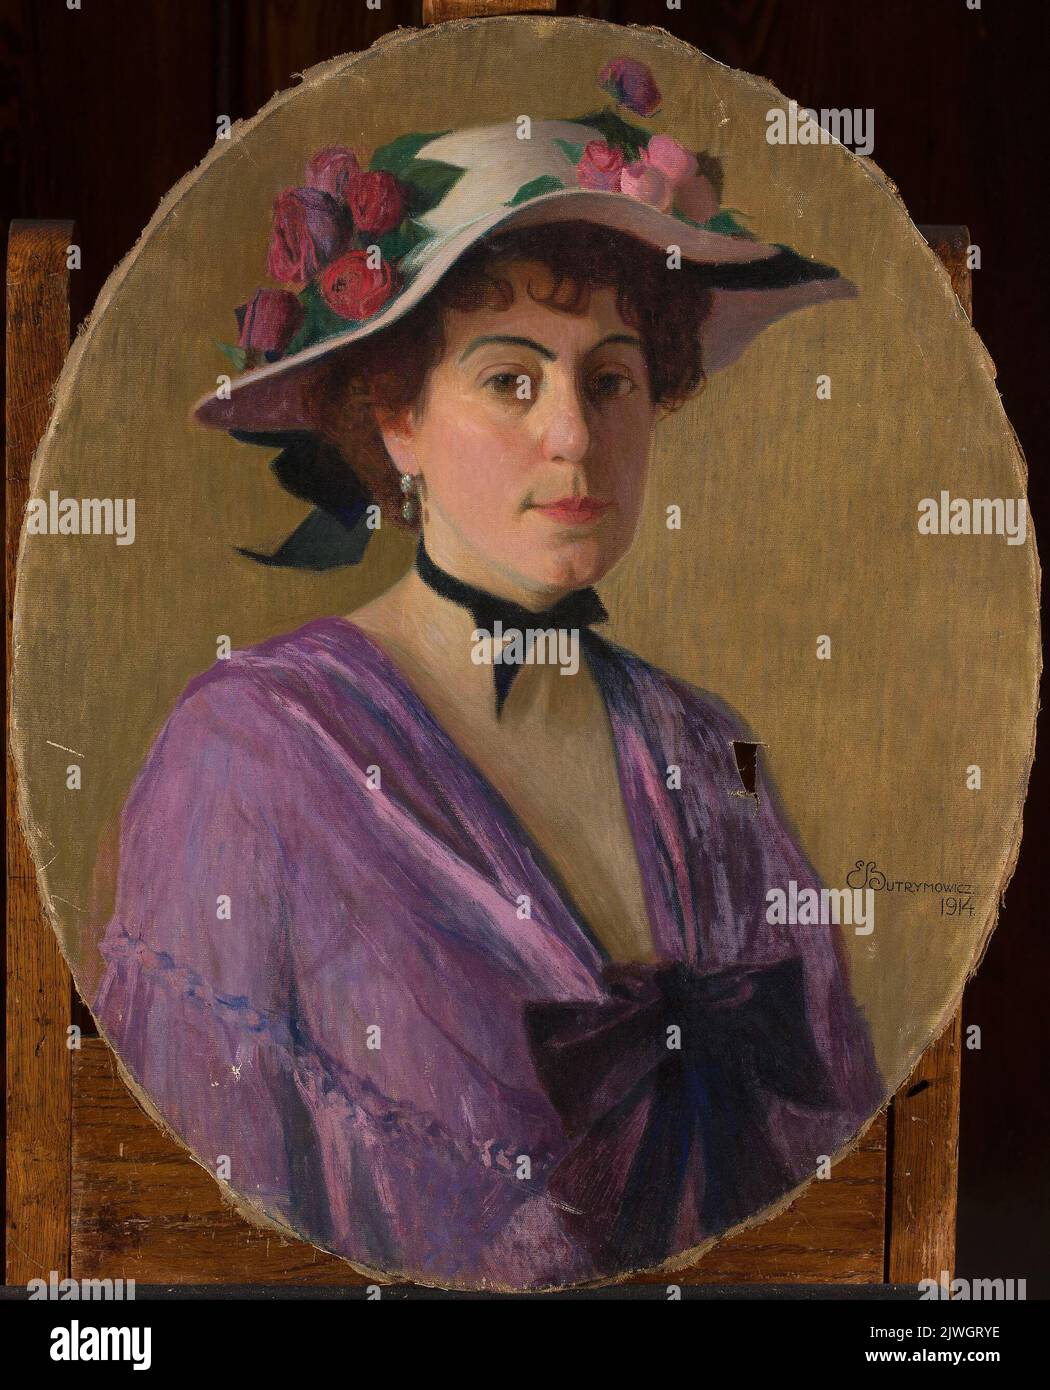 Ritratto di una donna in un cappello con fiori. Butrymowicz, Edward (1879-1944), pittore Foto Stock